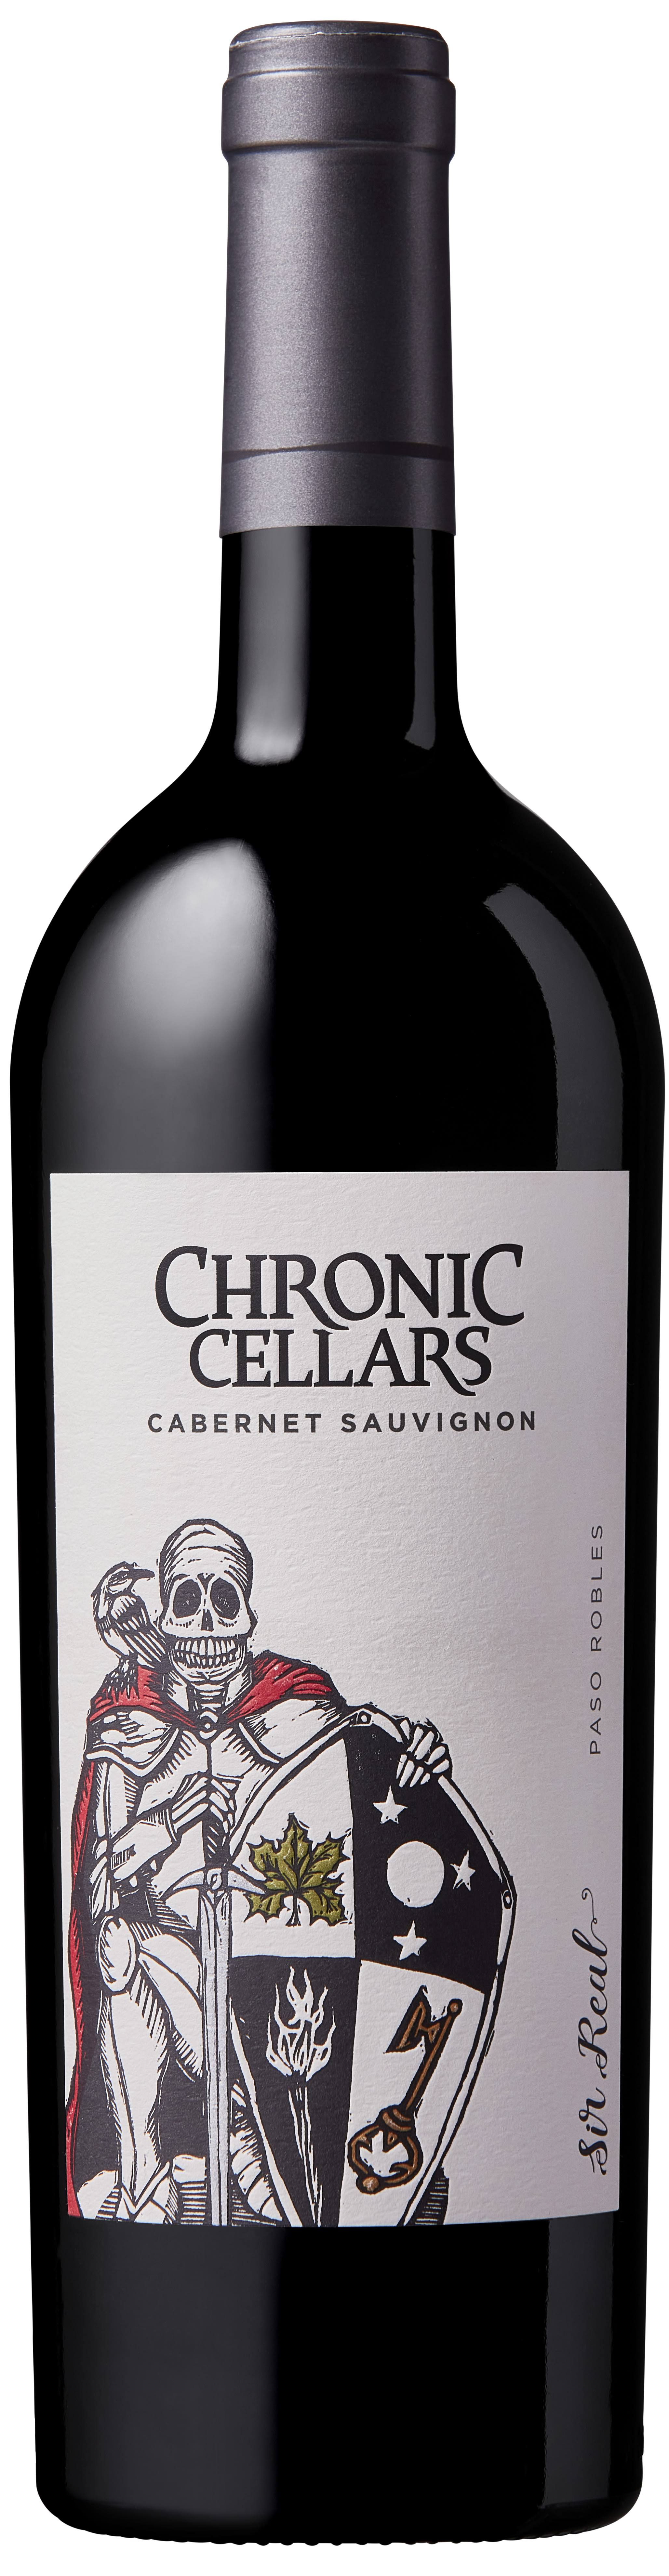 Chronic Cellars 'Sir Real' Cabernet Sauvignon 2019/20, Paso Robles